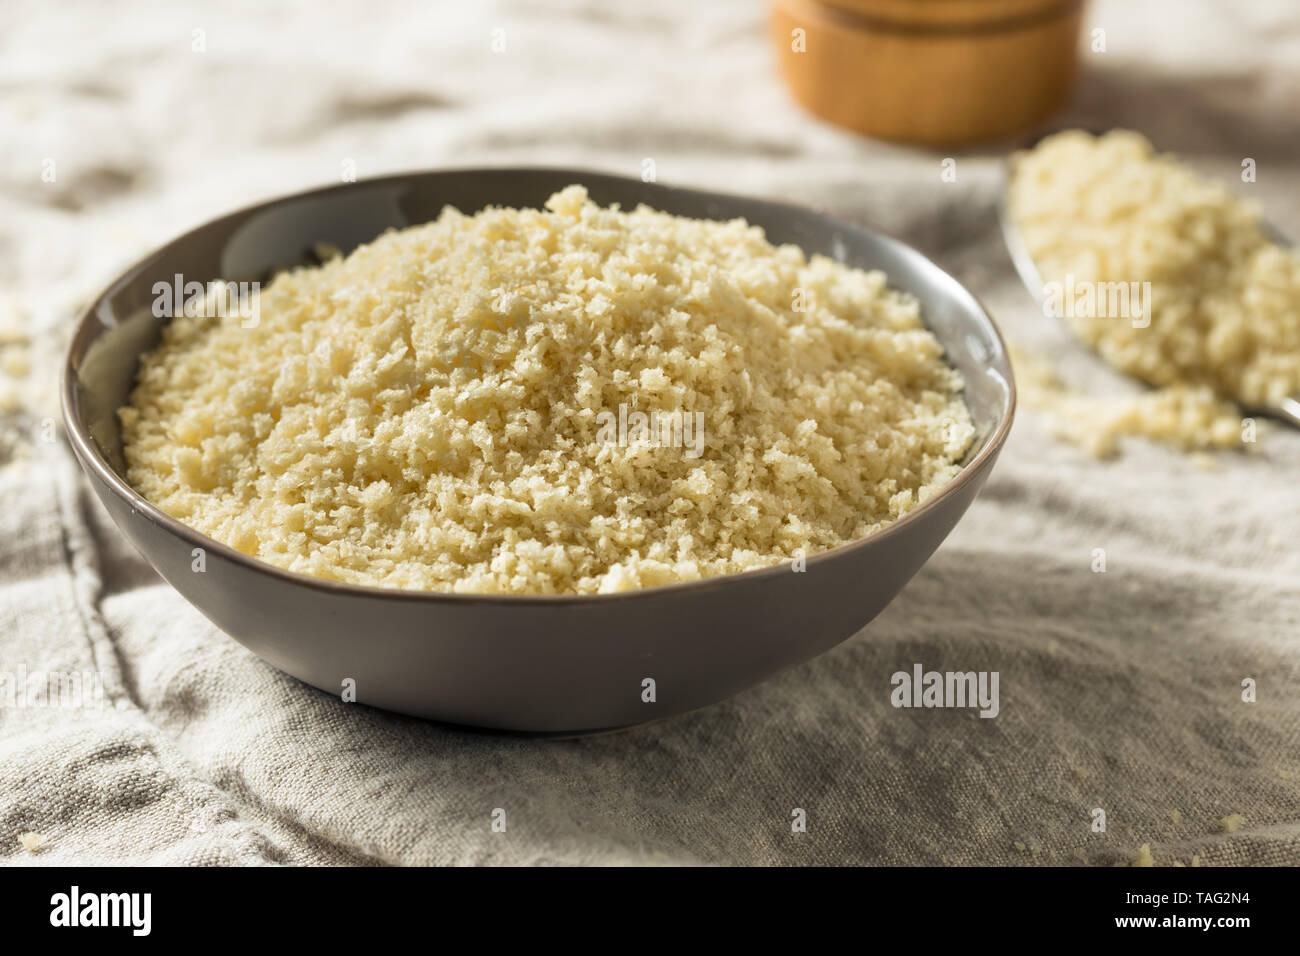 Flakey panierte Panko Brotkrumen, die zum Kochen von Nahrungsmitteln  Stockfotografie - Alamy